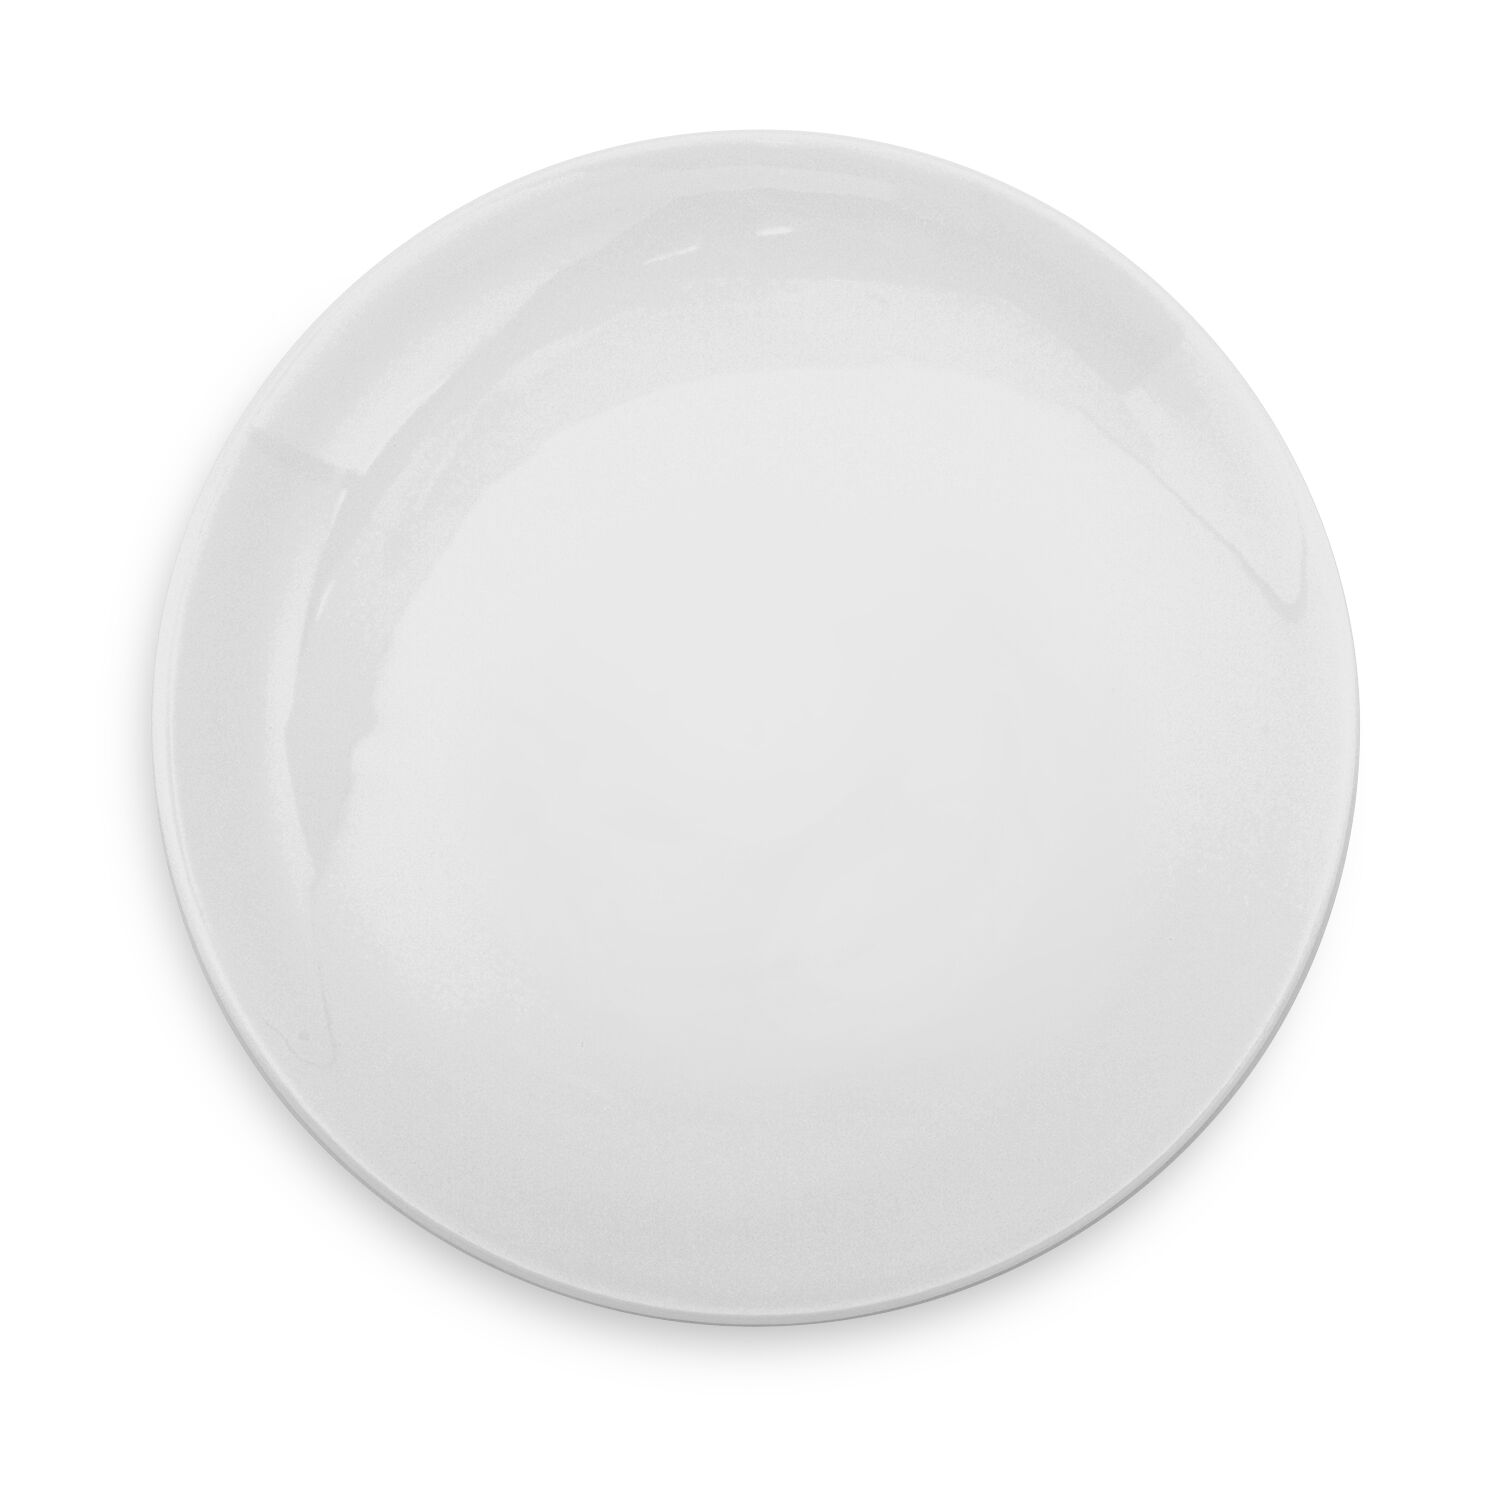 Large White Dinner Plates Steak Plates Oval Large Dinner Plates 35cm Porcelain 